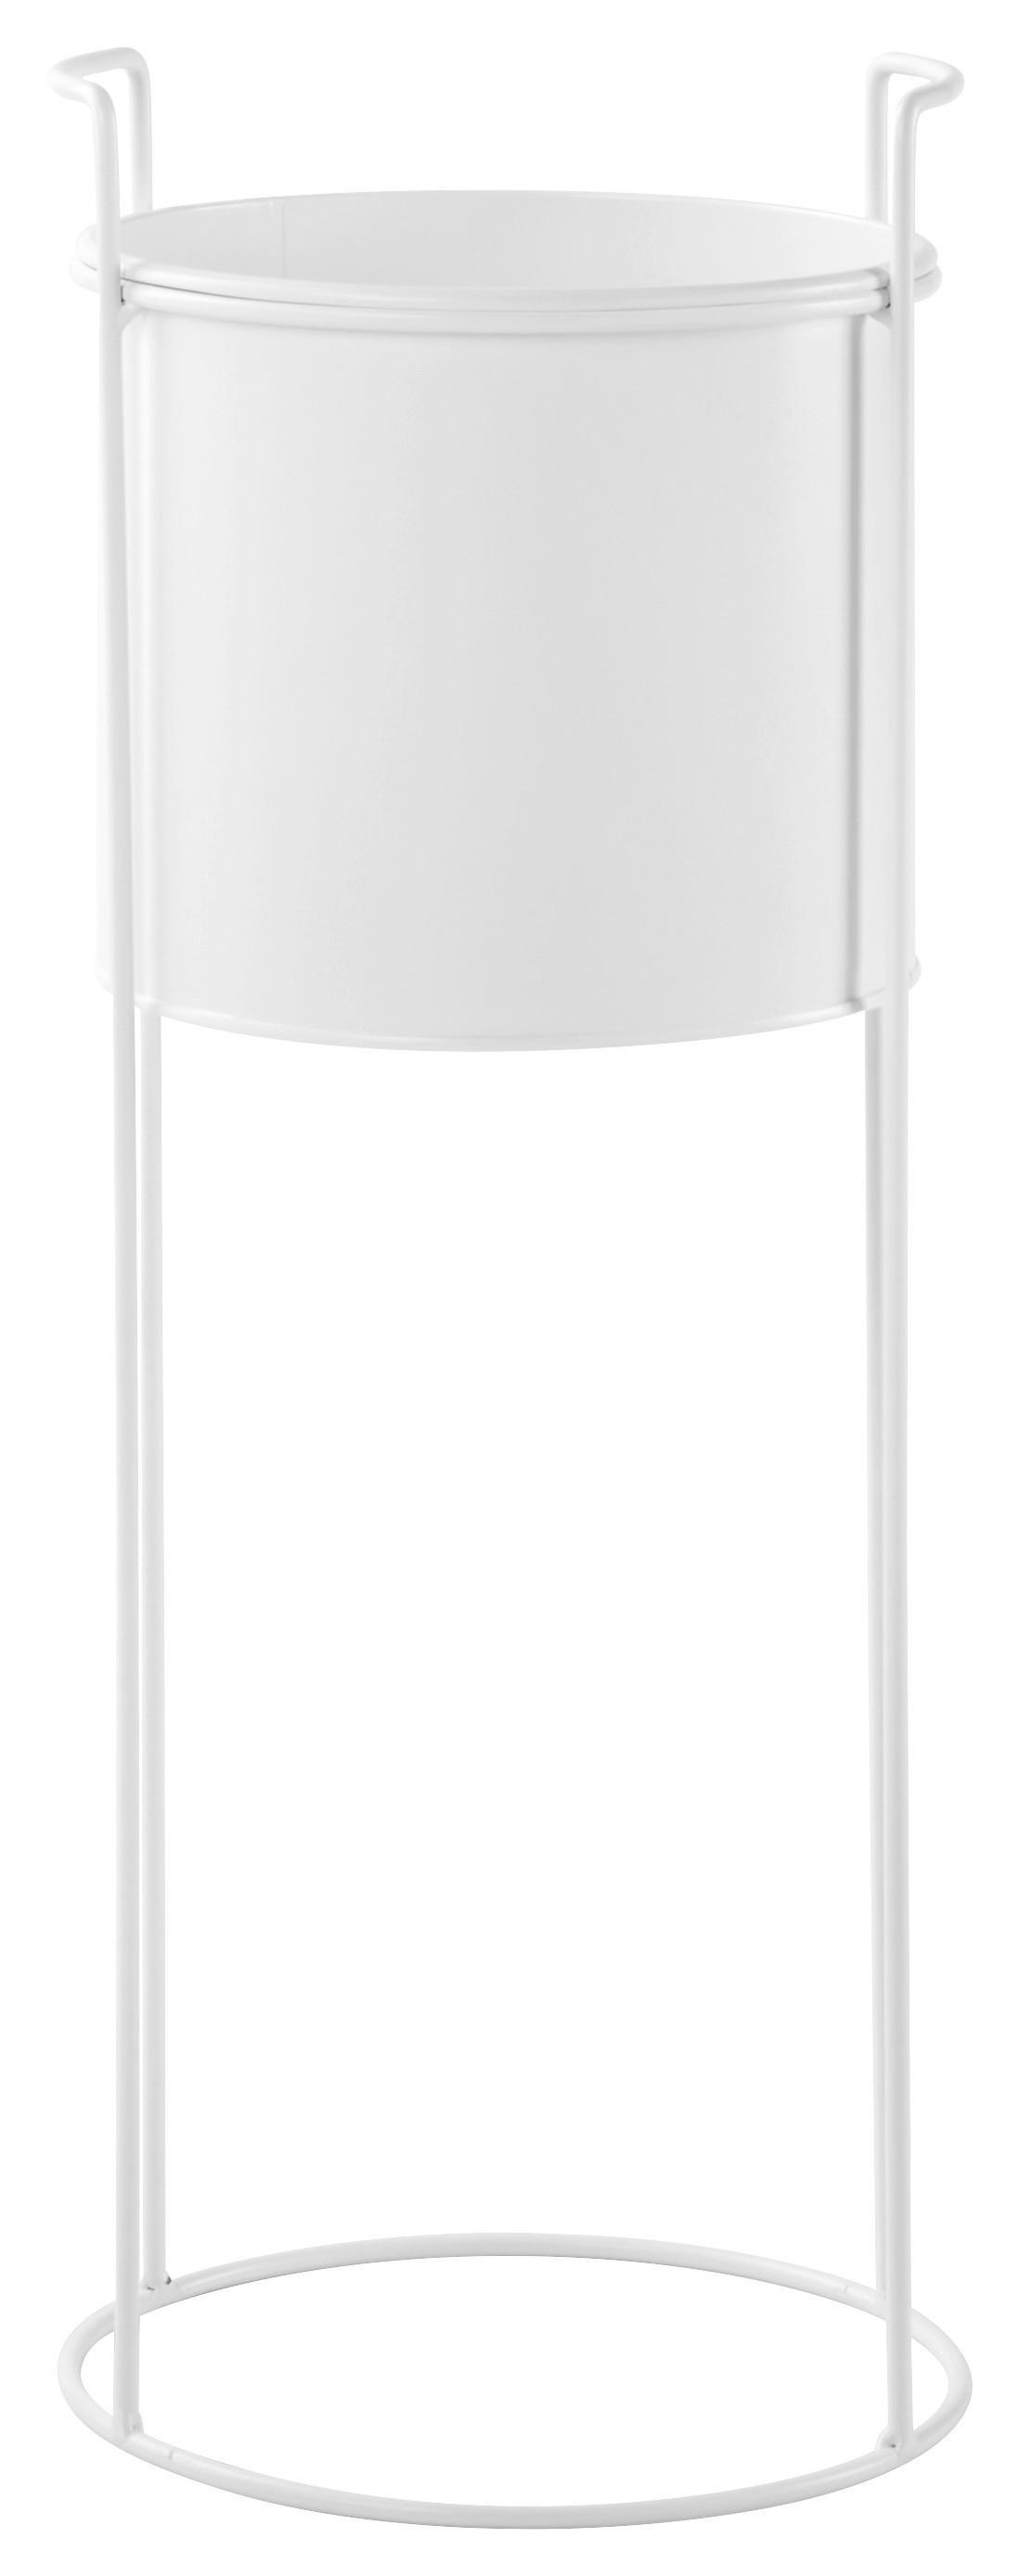 Ukrasna Tegla Trelleborg I -Paz- - bijela, Basics, metal (23/65cm) - Modern Living